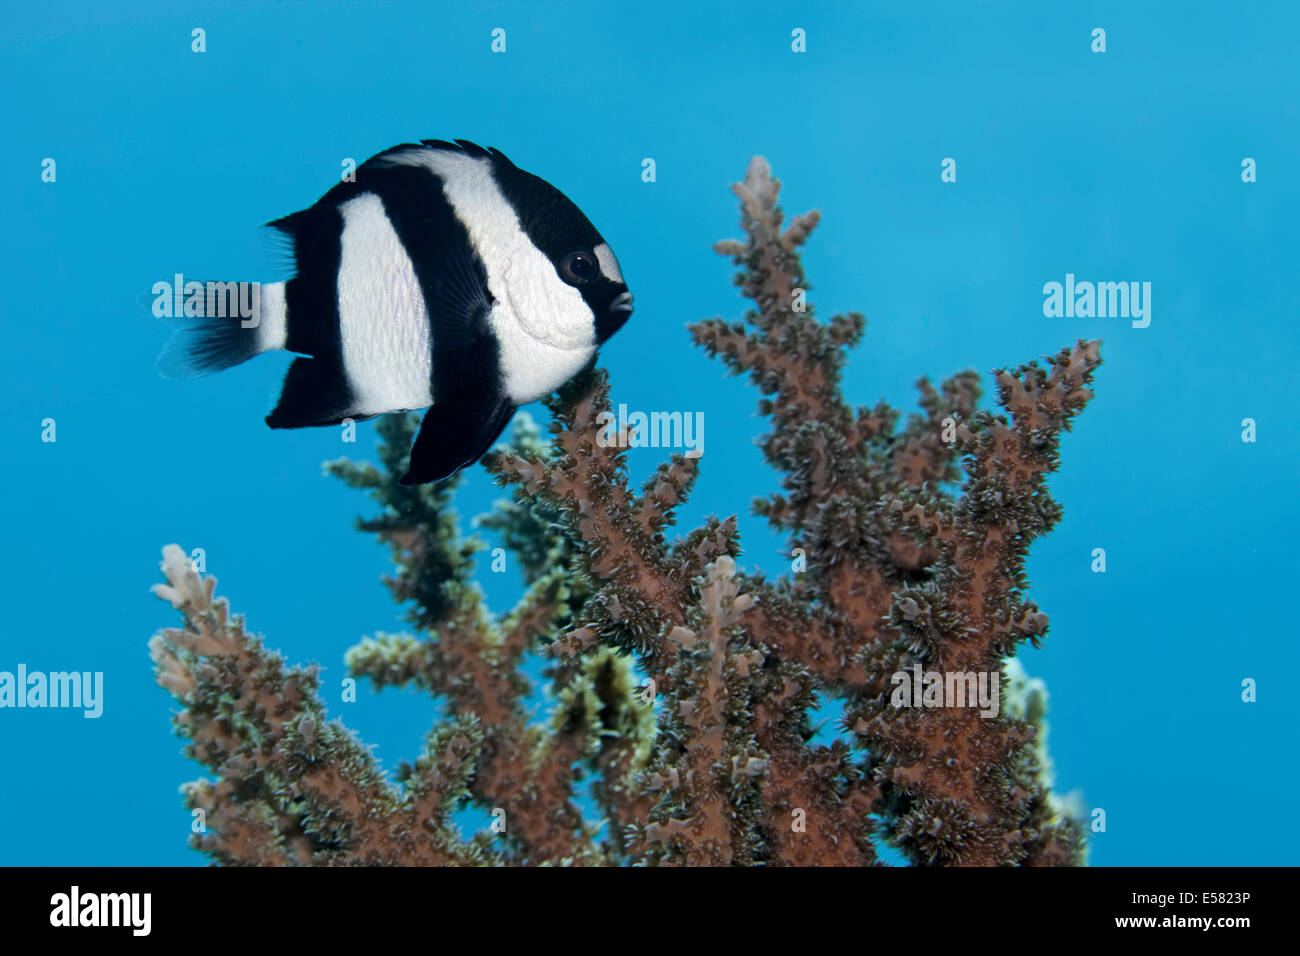 Whitetail dascyllus (Dascyllus aruanus), Red Sea, Egypt Stock Photo